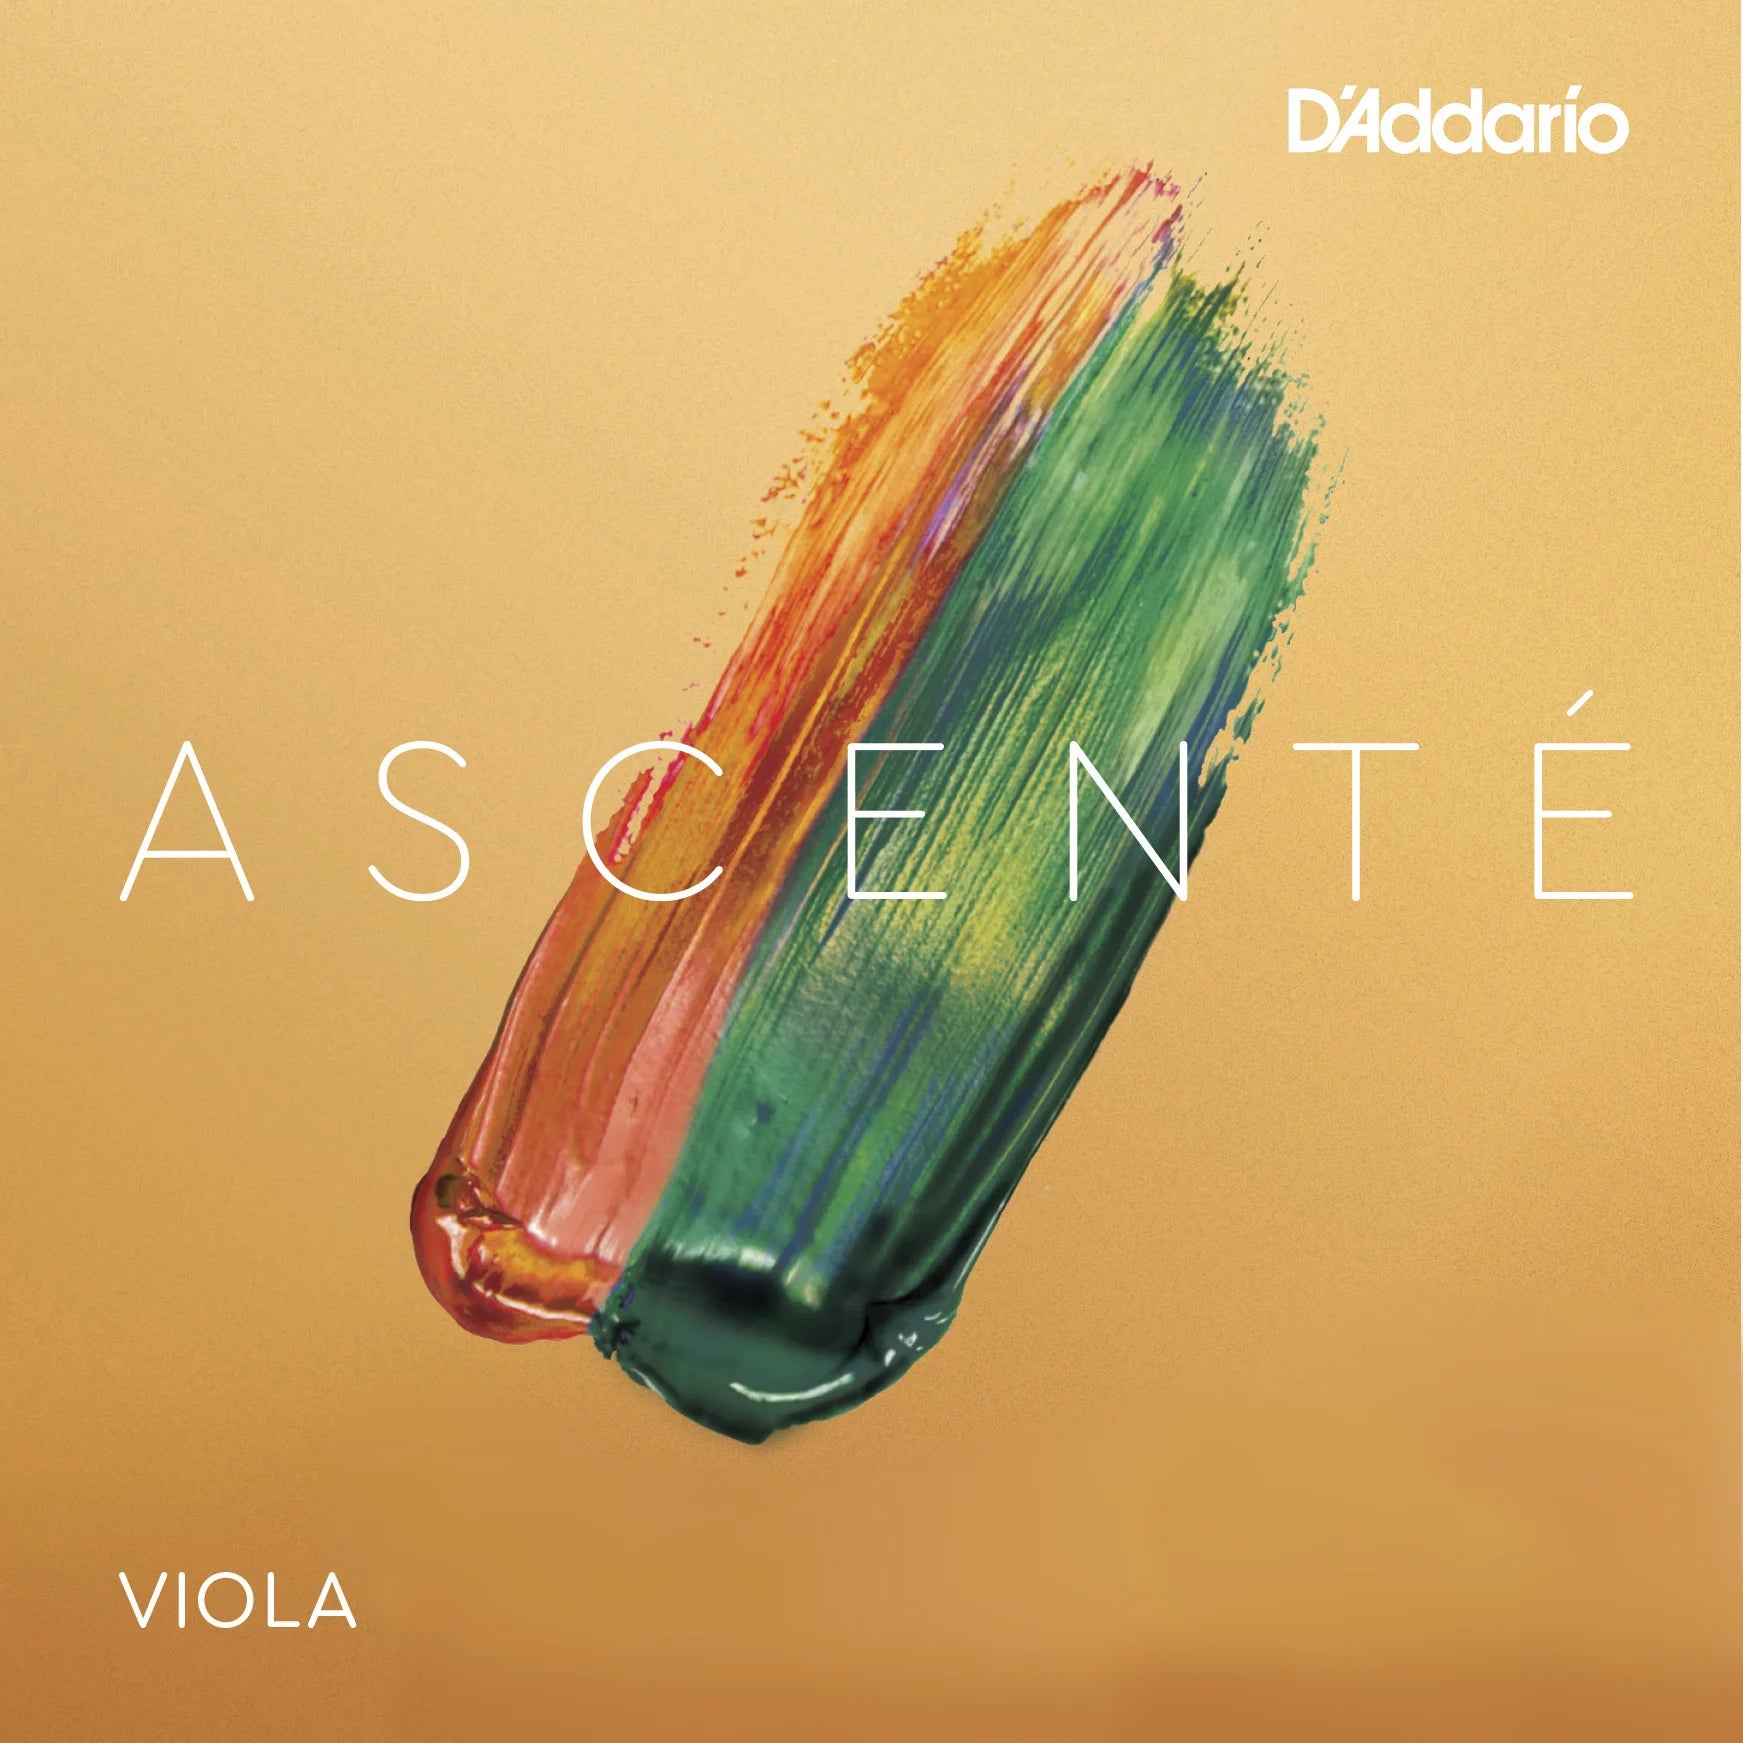 D'Addario - Ascente | Viola